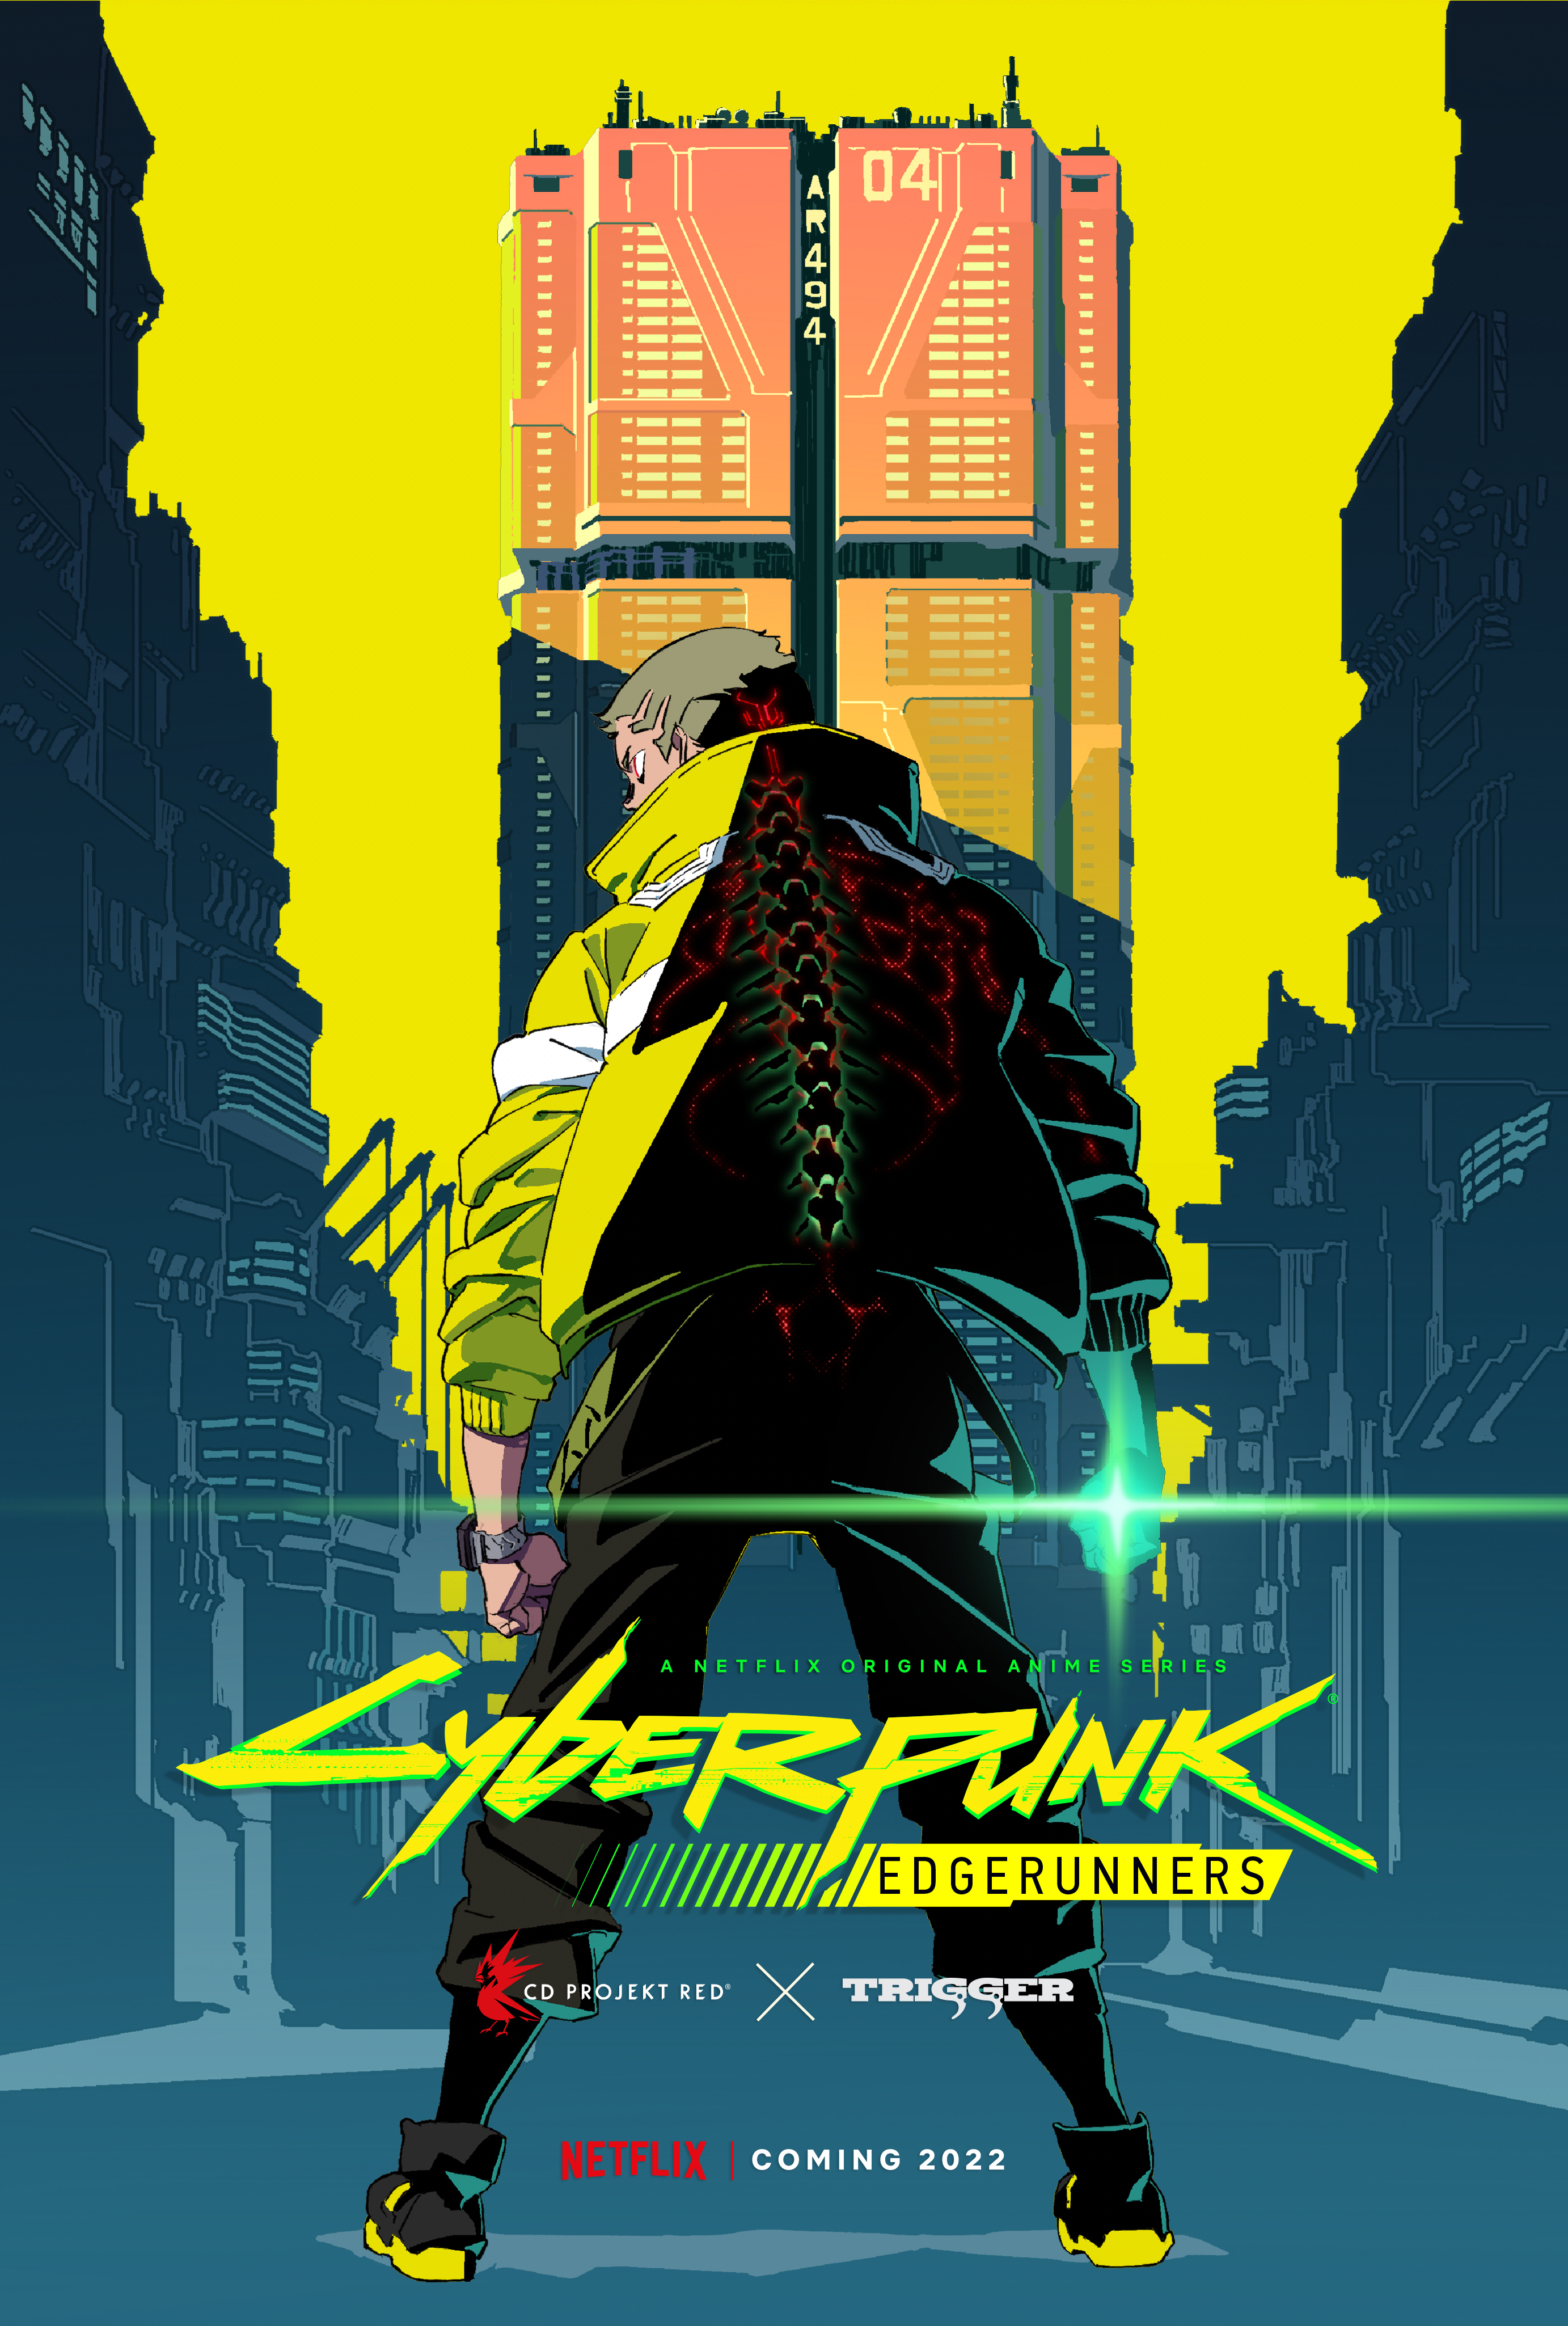 Assista ao vídeo de abertura do anime Cyberpunk: Edgerunners - Arkade